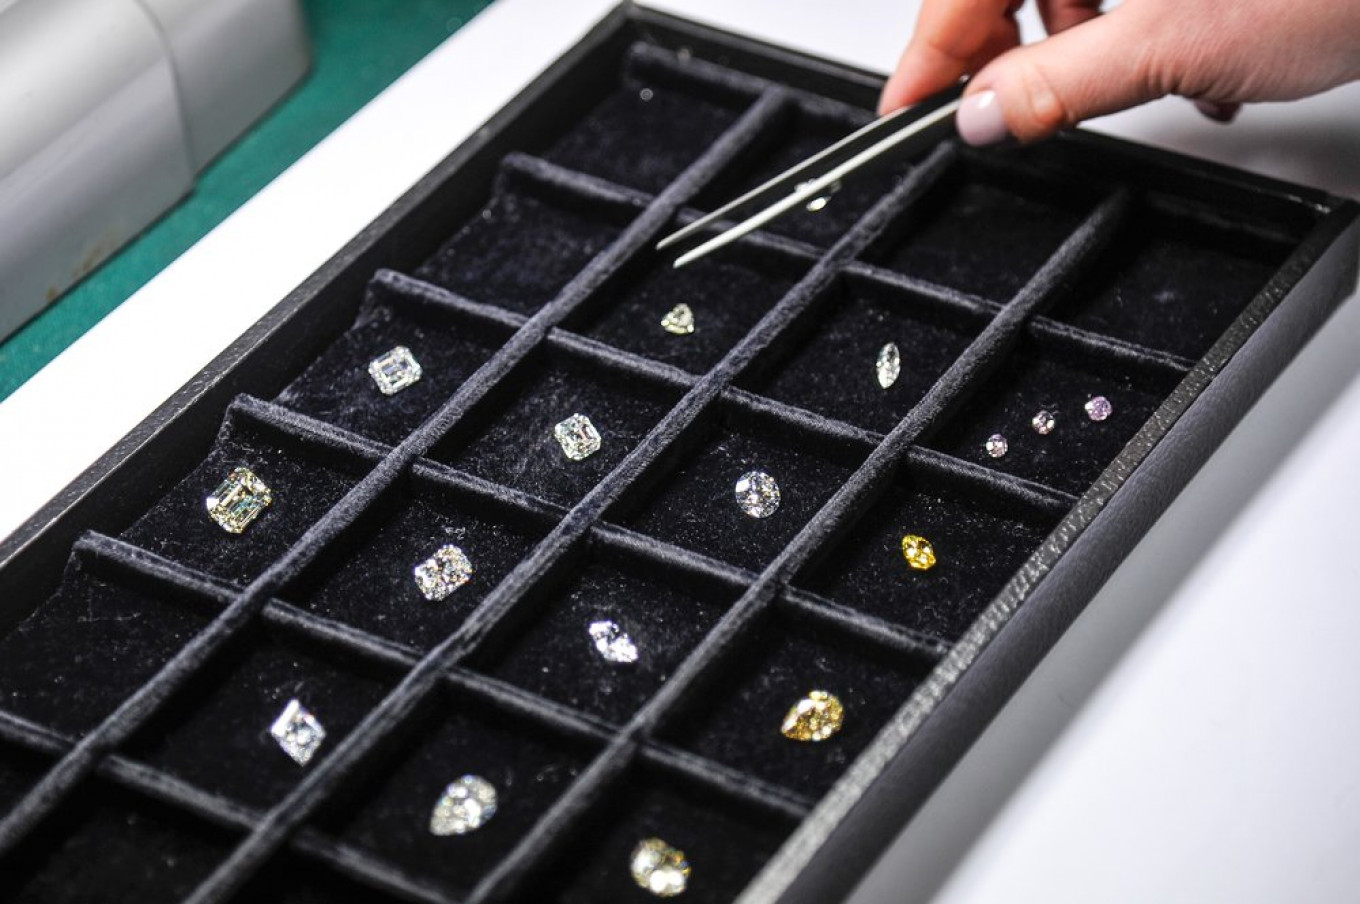 Russia’s Alrosa Raises $11.8 Million in New York Diamond Sale